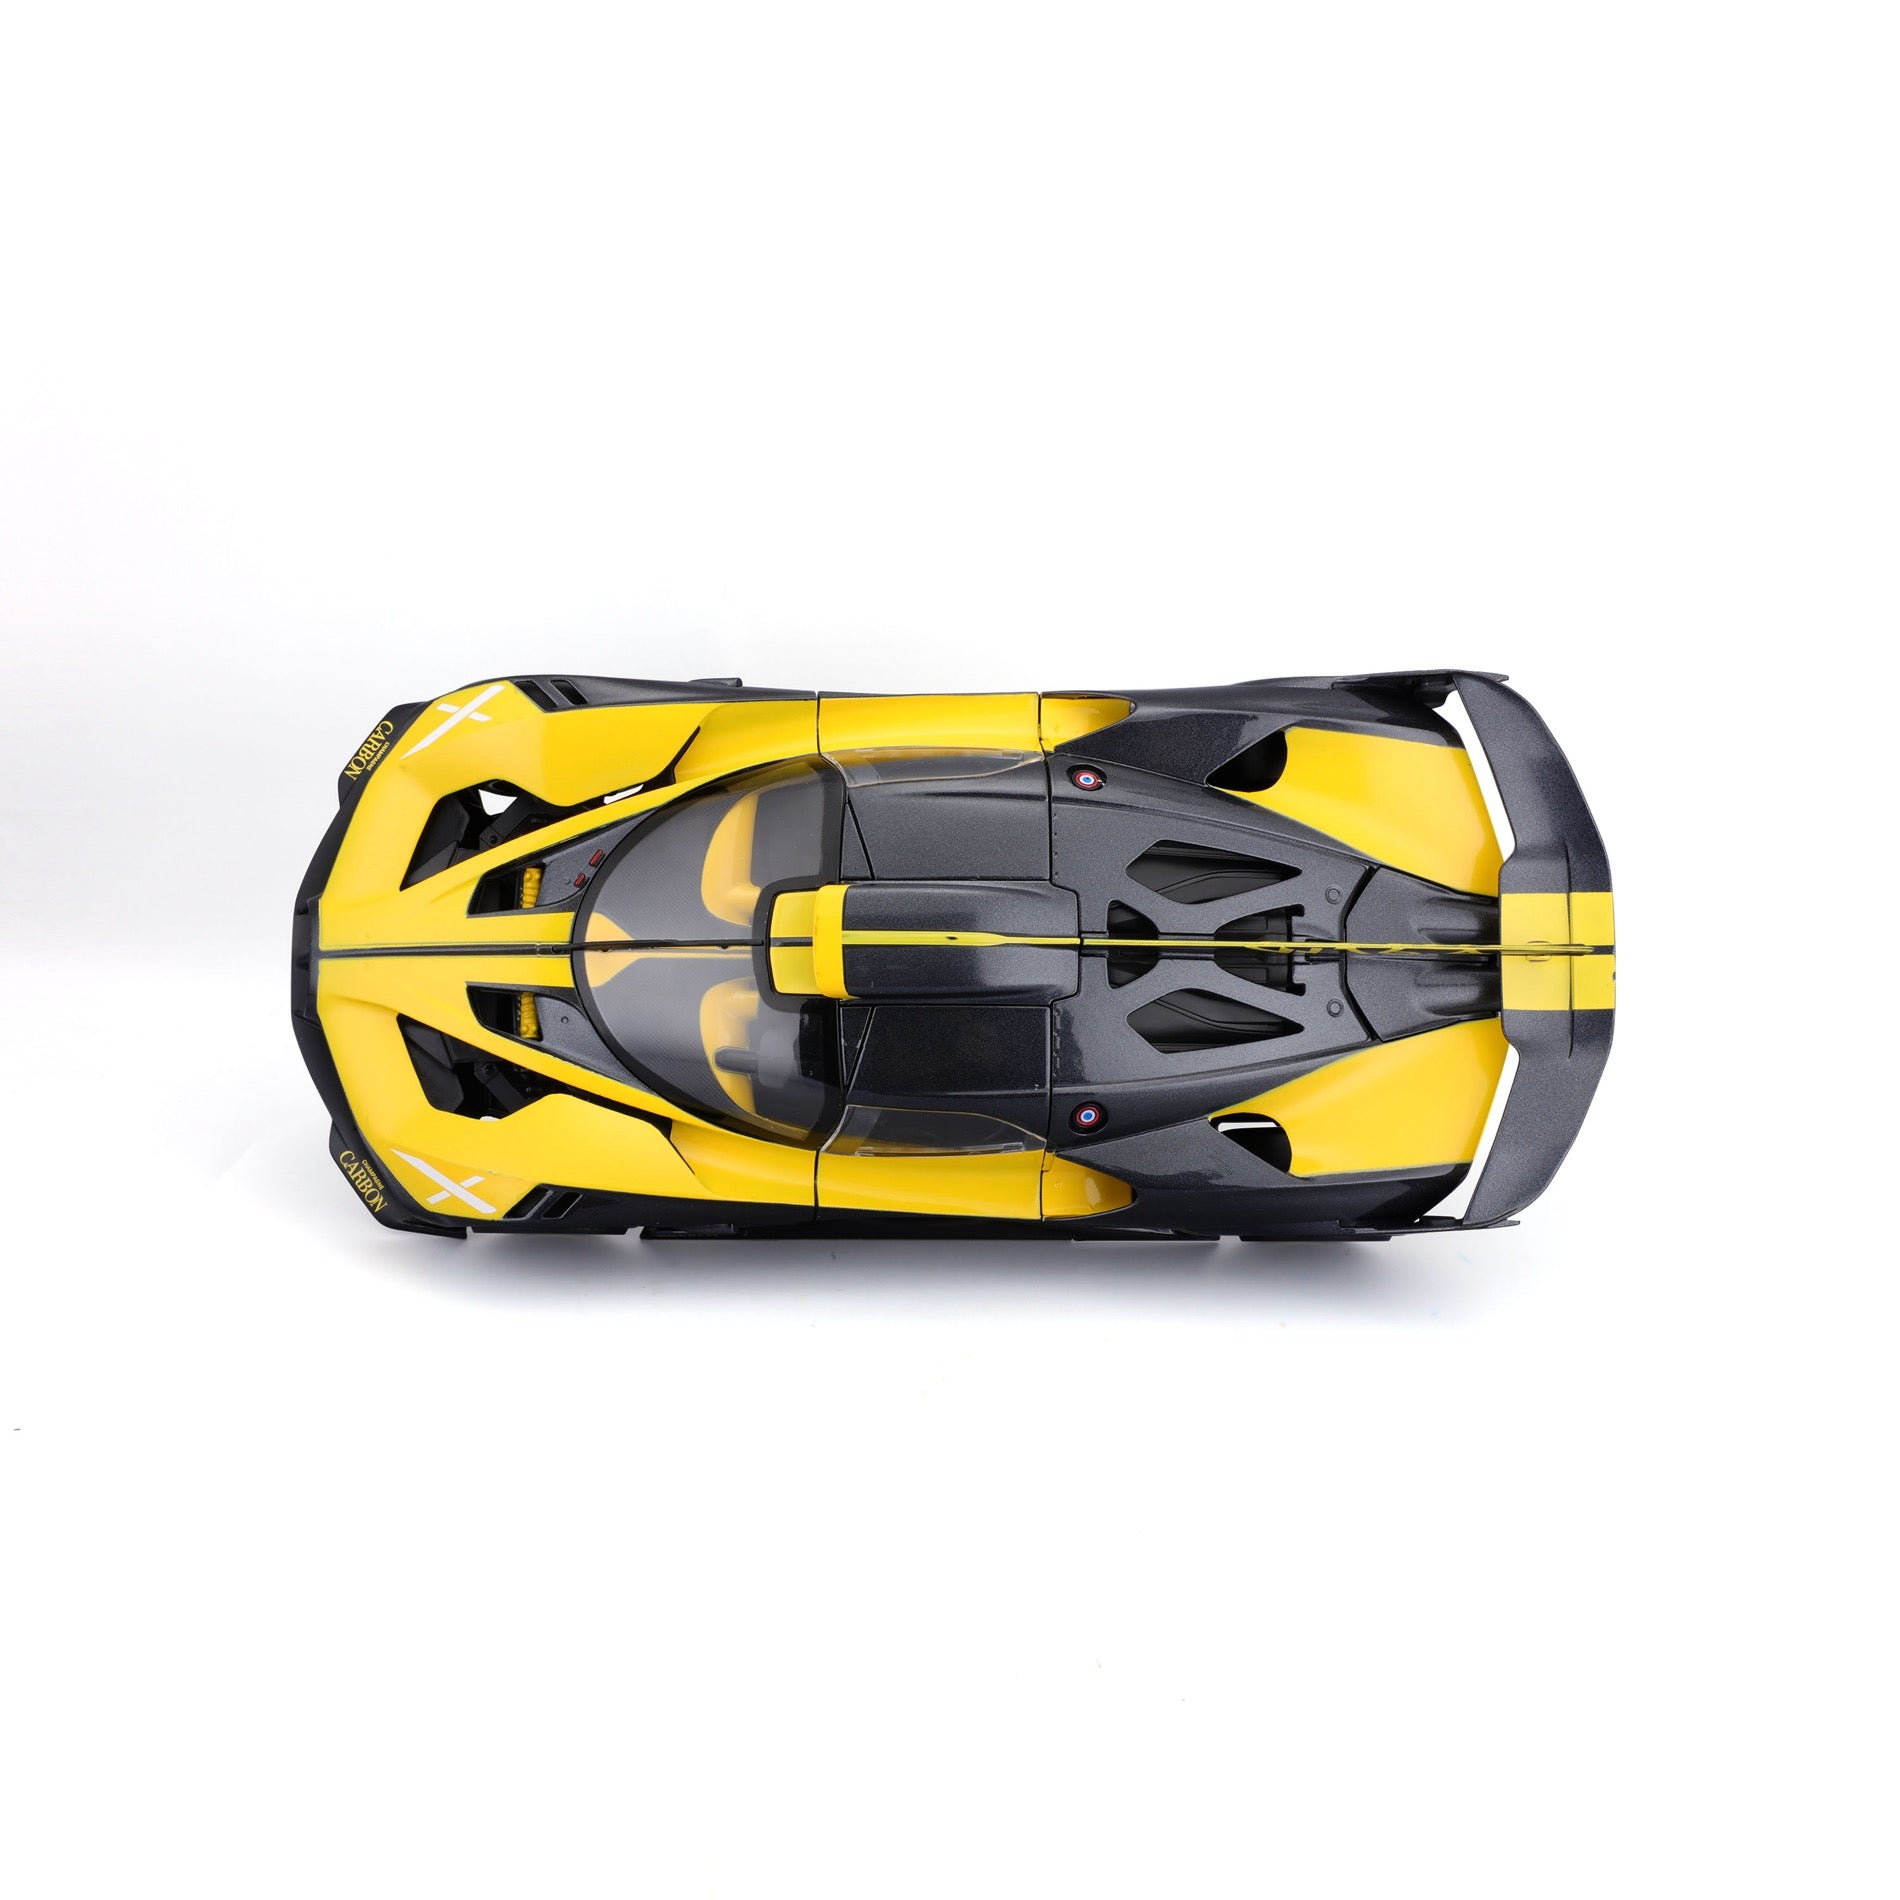 Burago 1/18 Scale Diecast 18-11047 - Bugatti Bolide - Black/Yellow